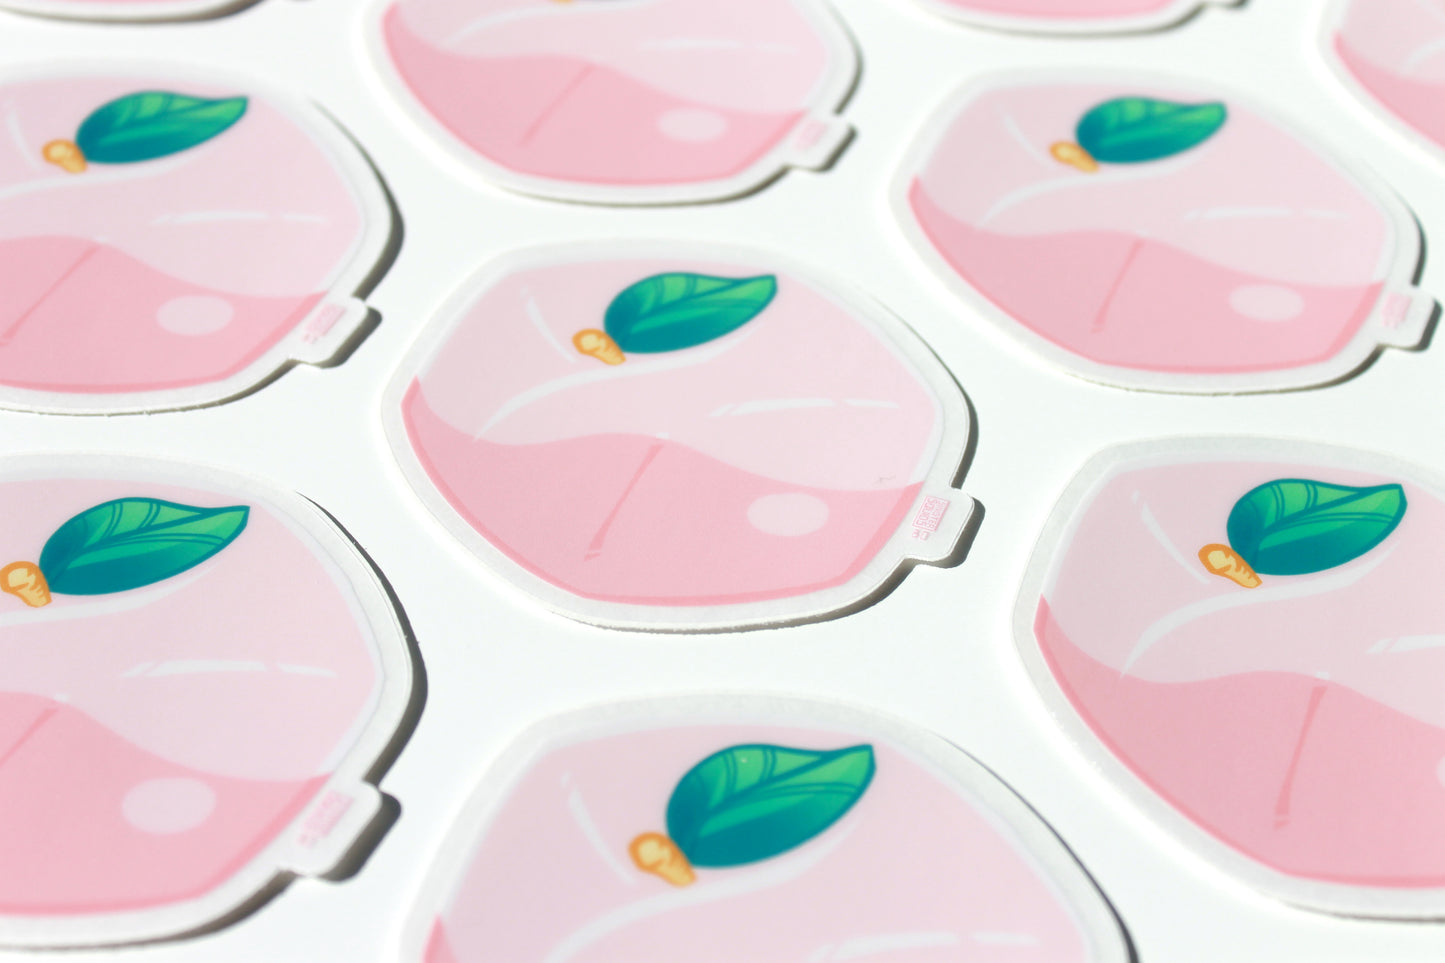 Peach Sticker